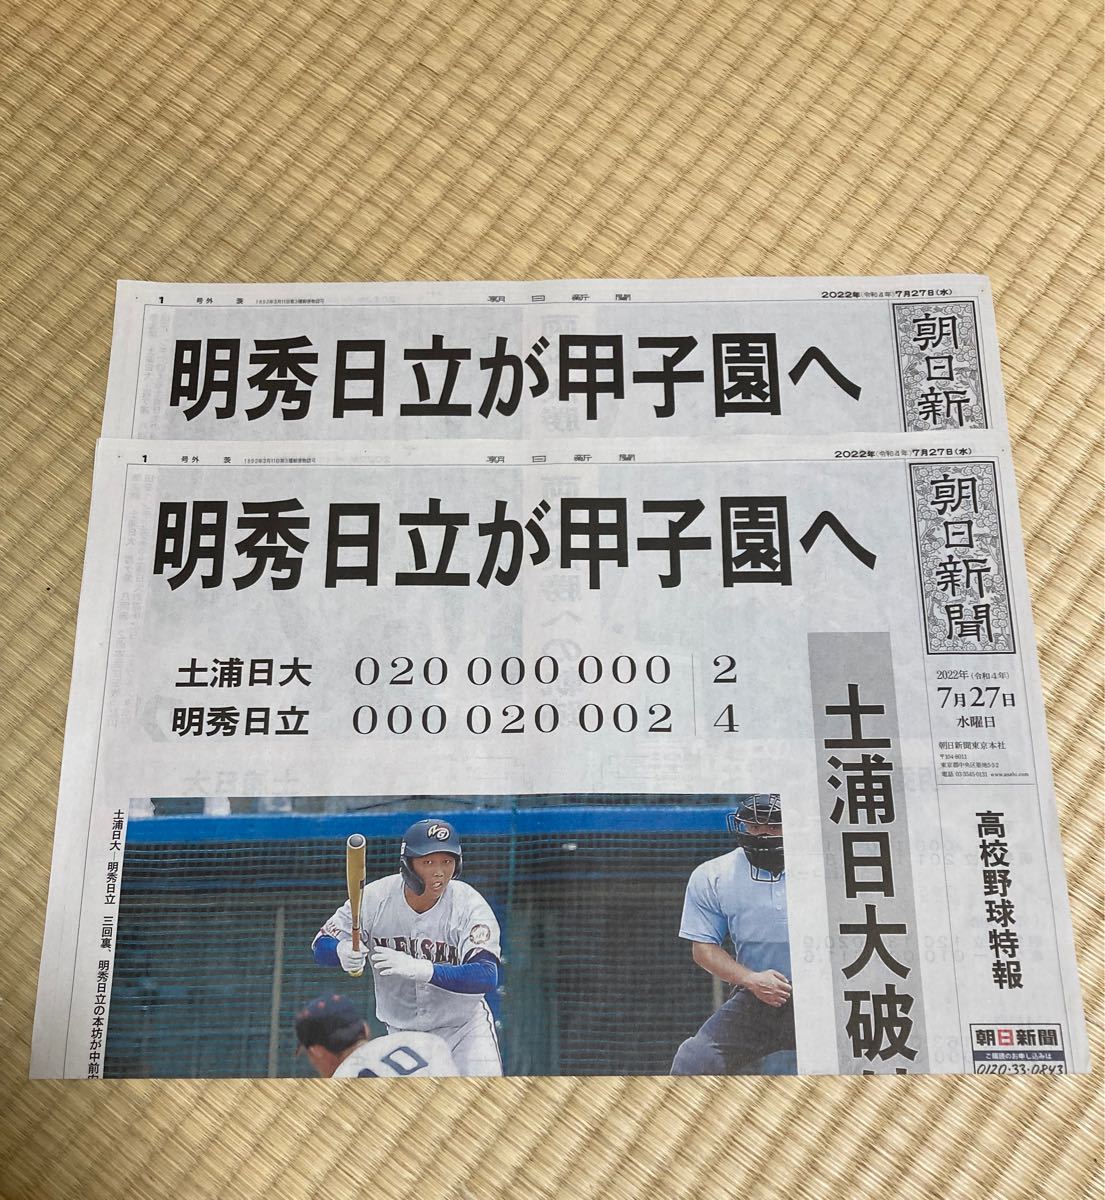 朝日新聞 高校野球特報 号外 三重高校甲子園